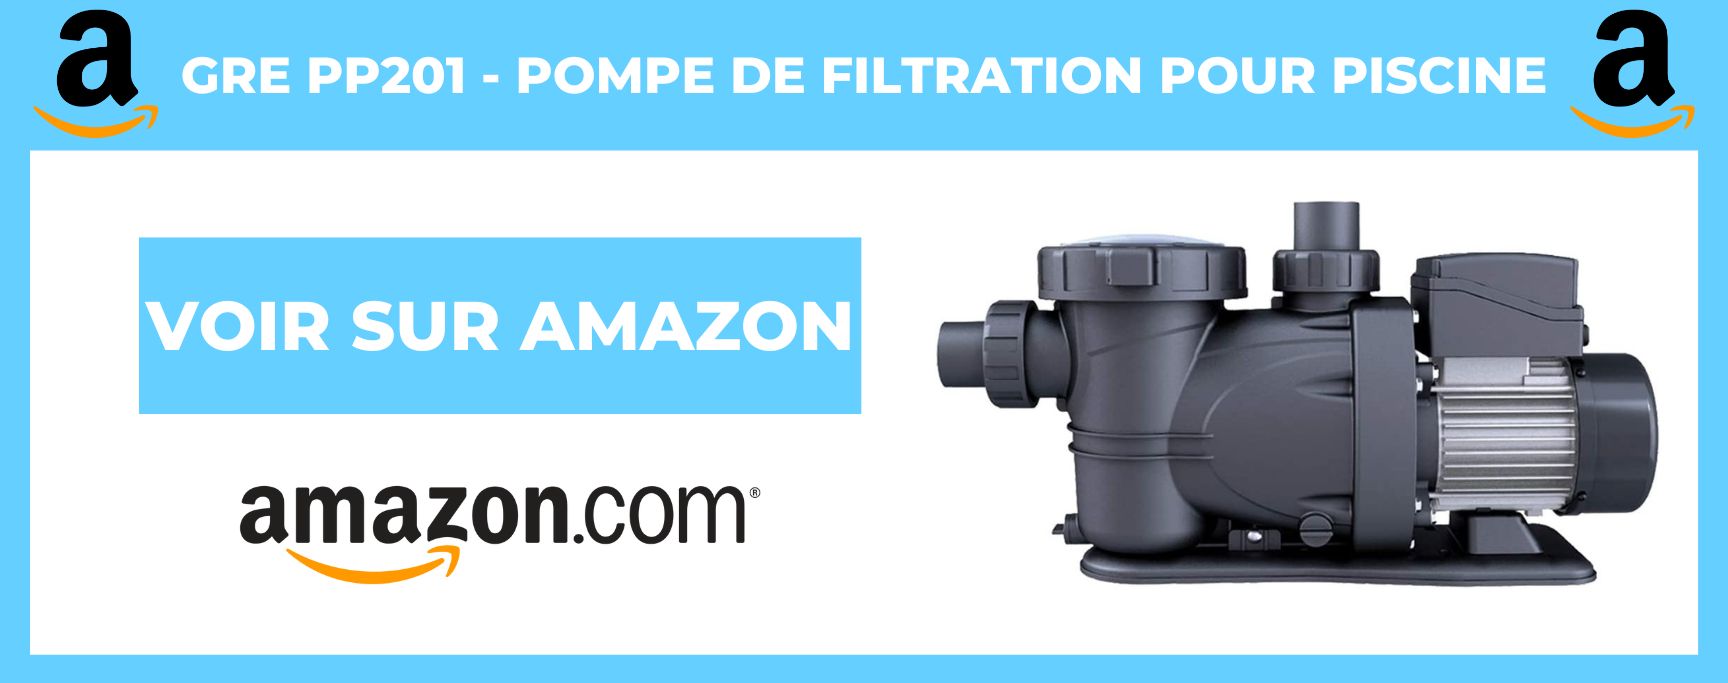 Gre PP201 - Pompe de Filtration pour Piscine